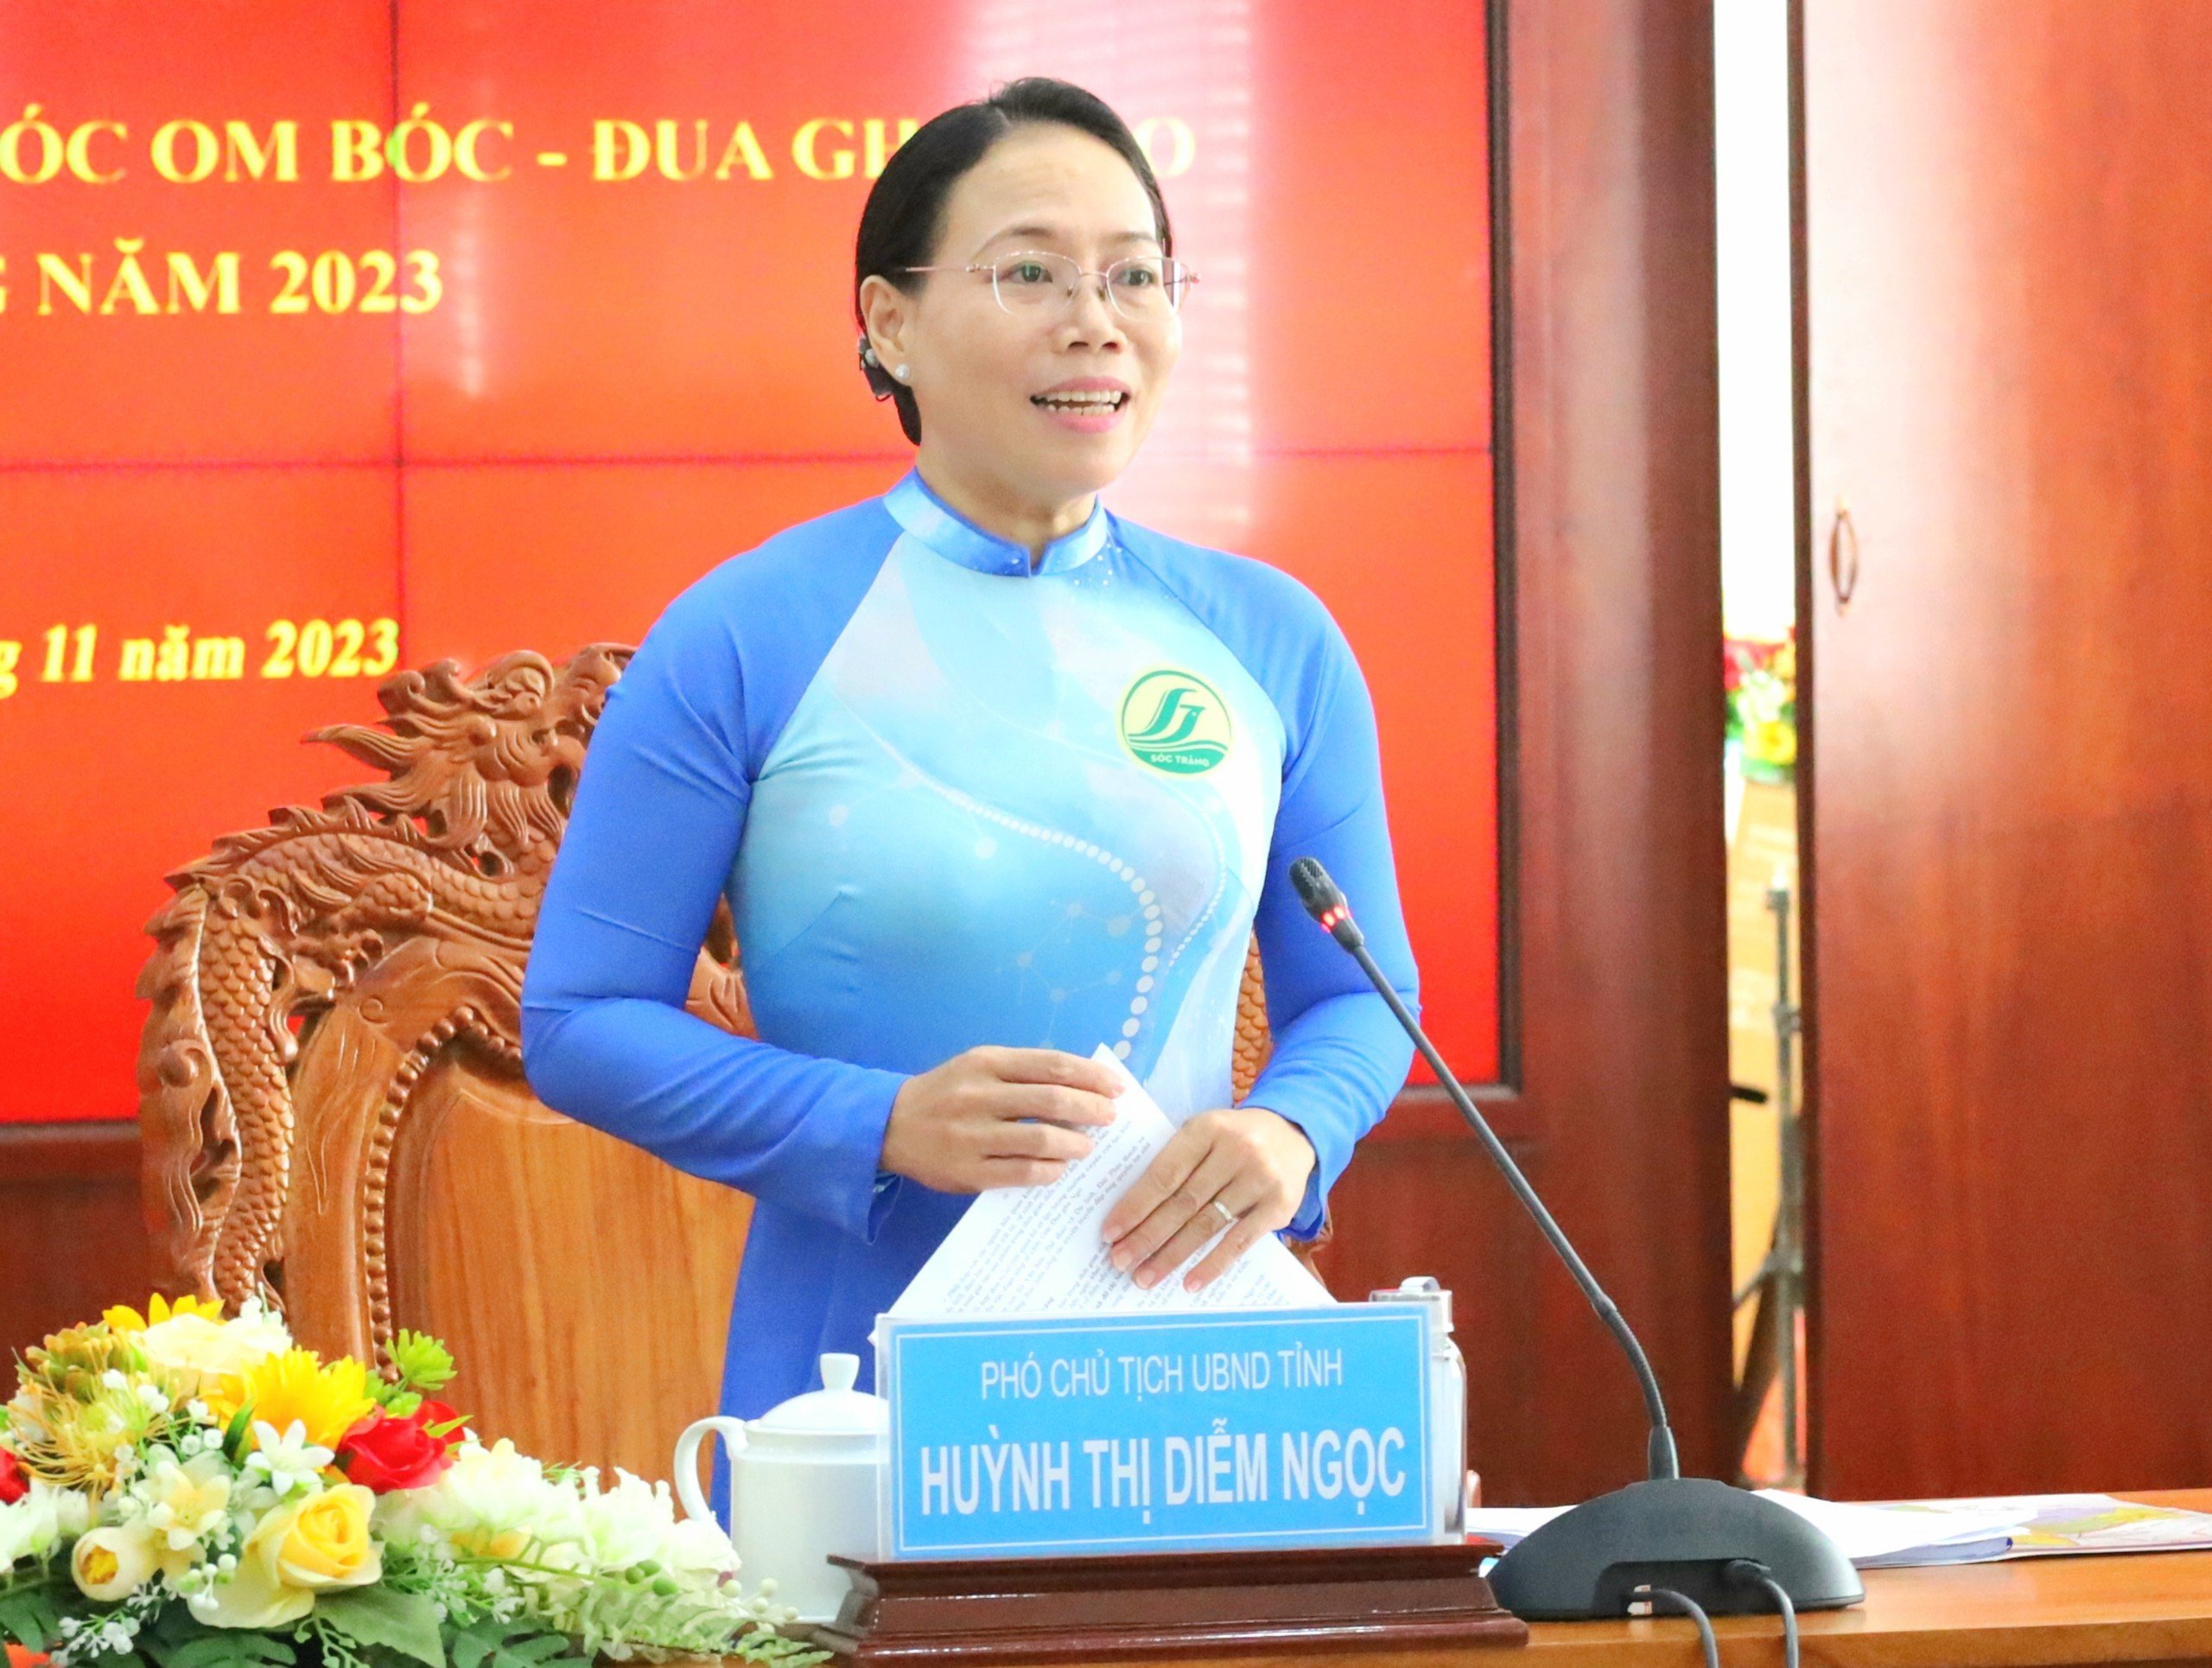 Bà Huỳnh Thị Diễm Ngọc - Phó Chủ tịch UBND tỉnh Sóc Trăng phát biểu tại buổi họp báo.